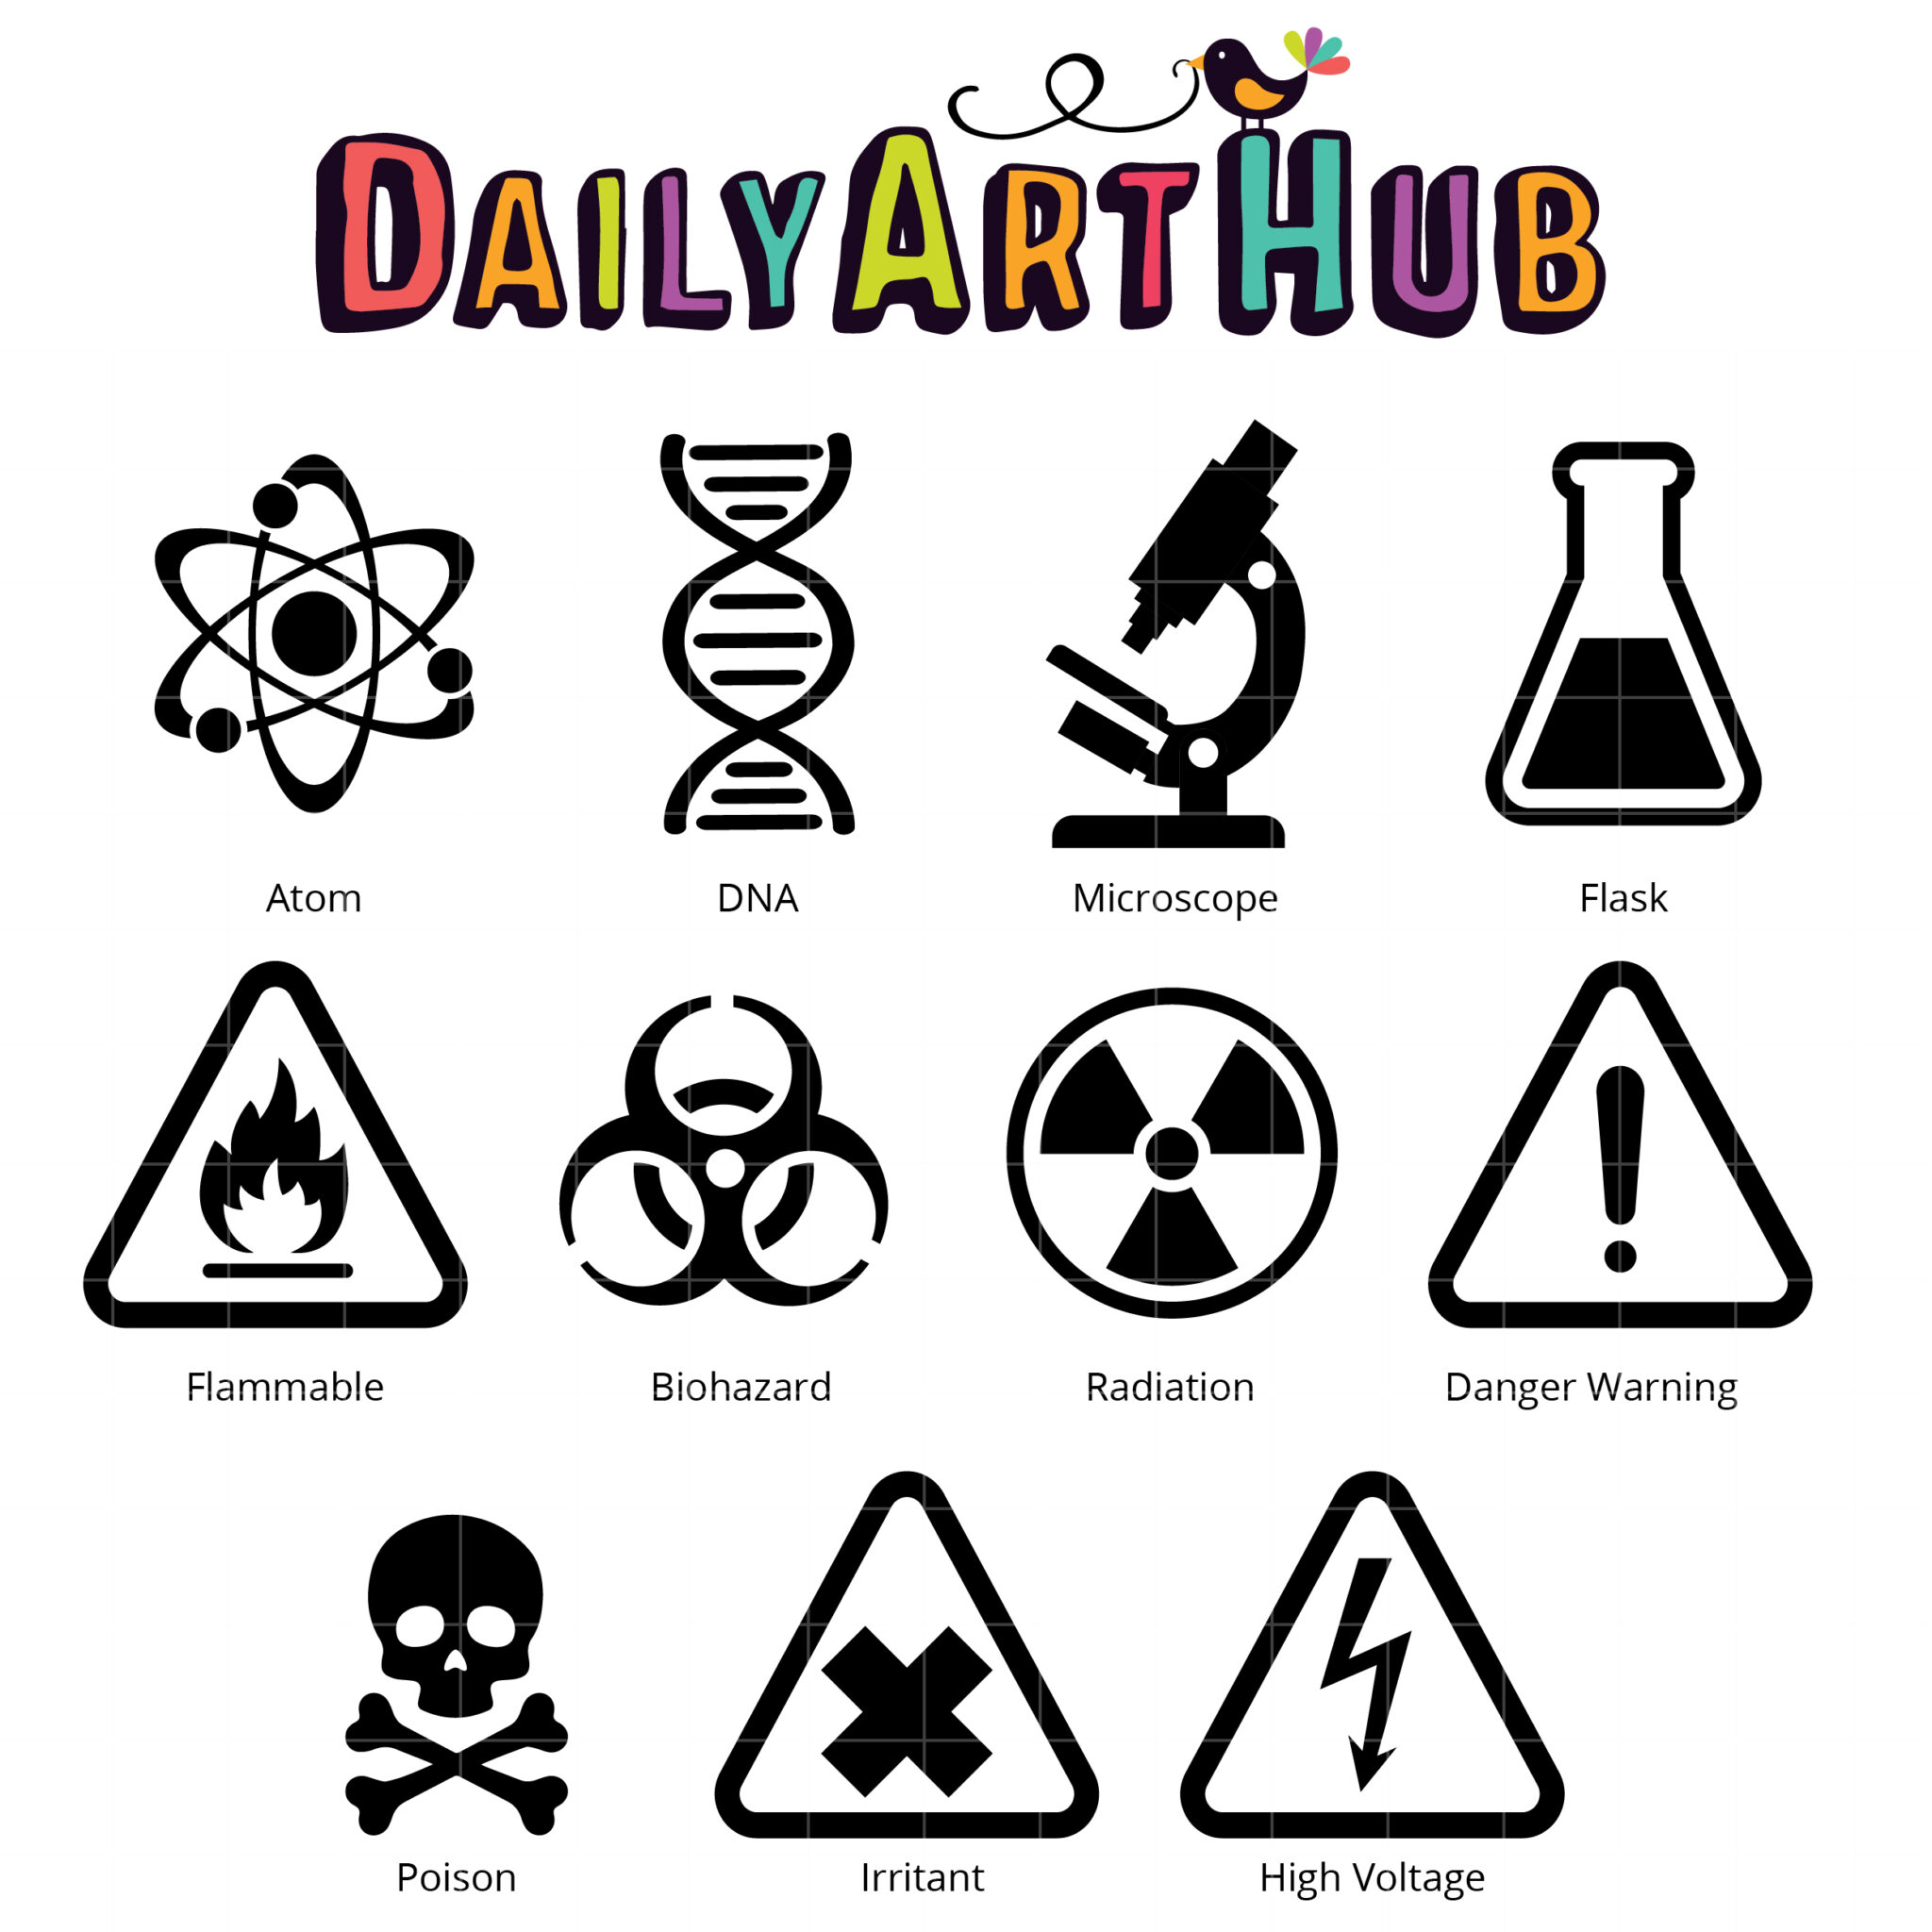 science symbols for kids